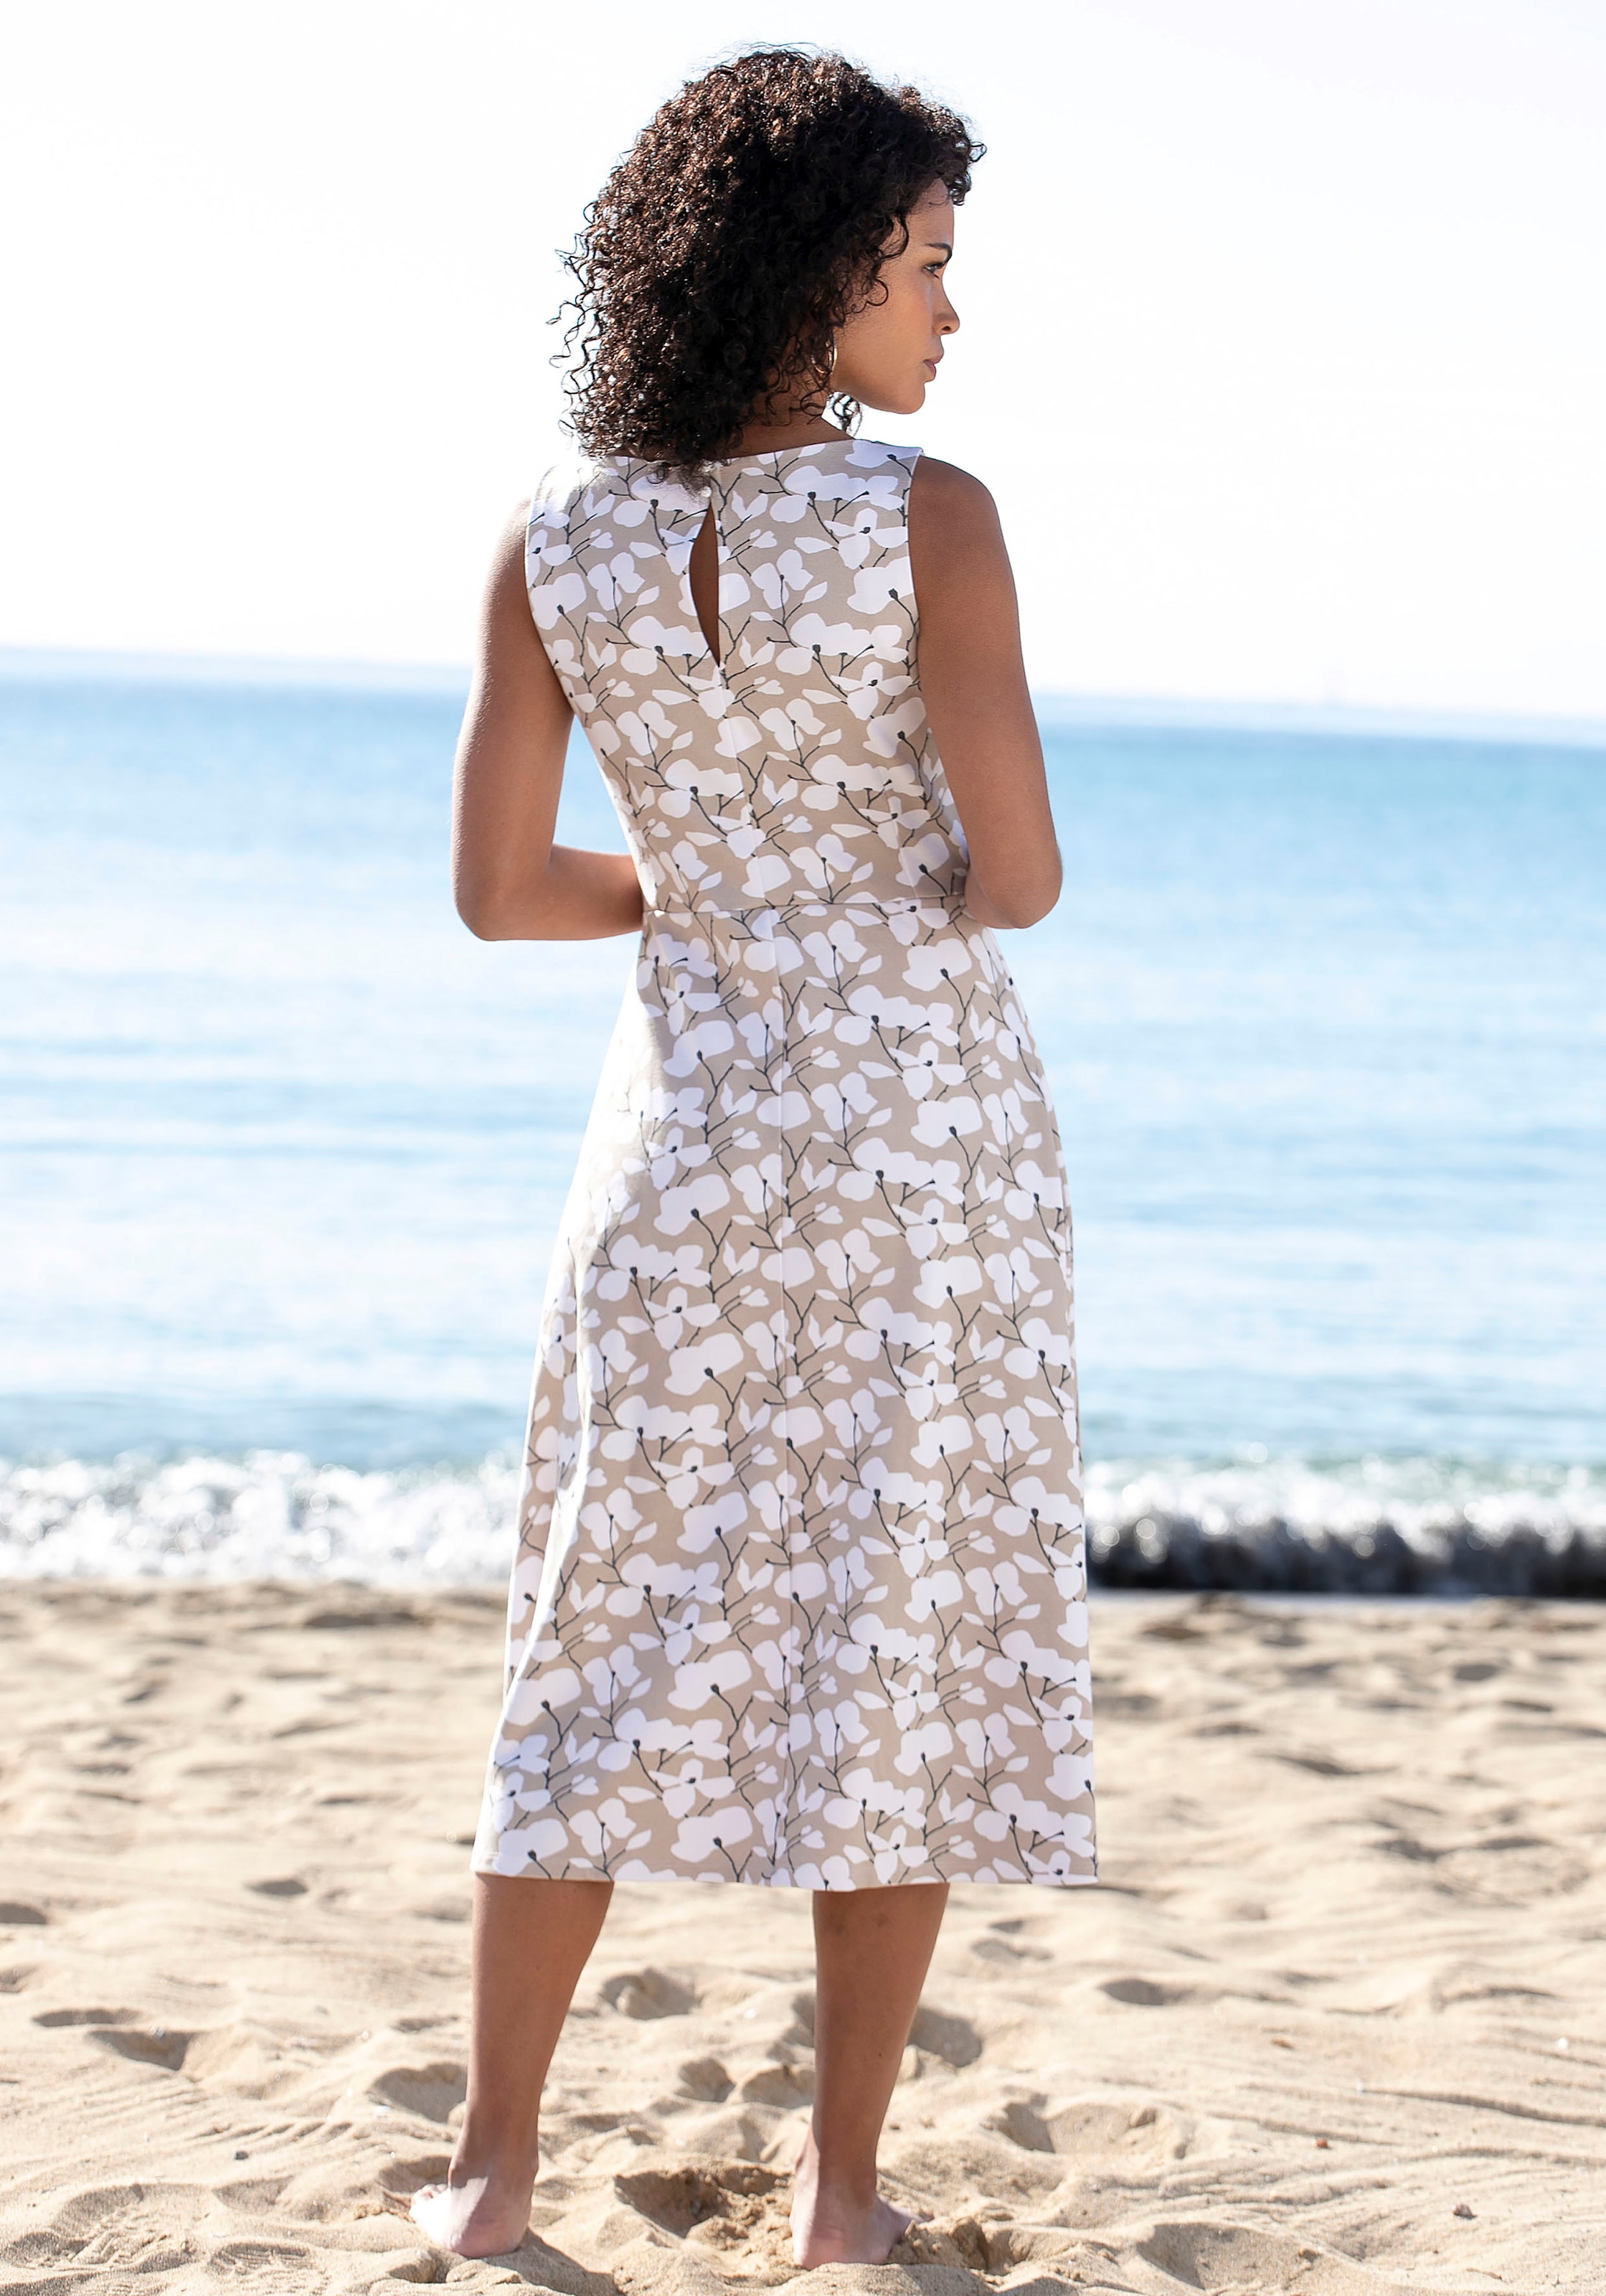 shoppen Strandmode, Sommerkleid, Beachtime Strandbekleidung mit Blumendruck,